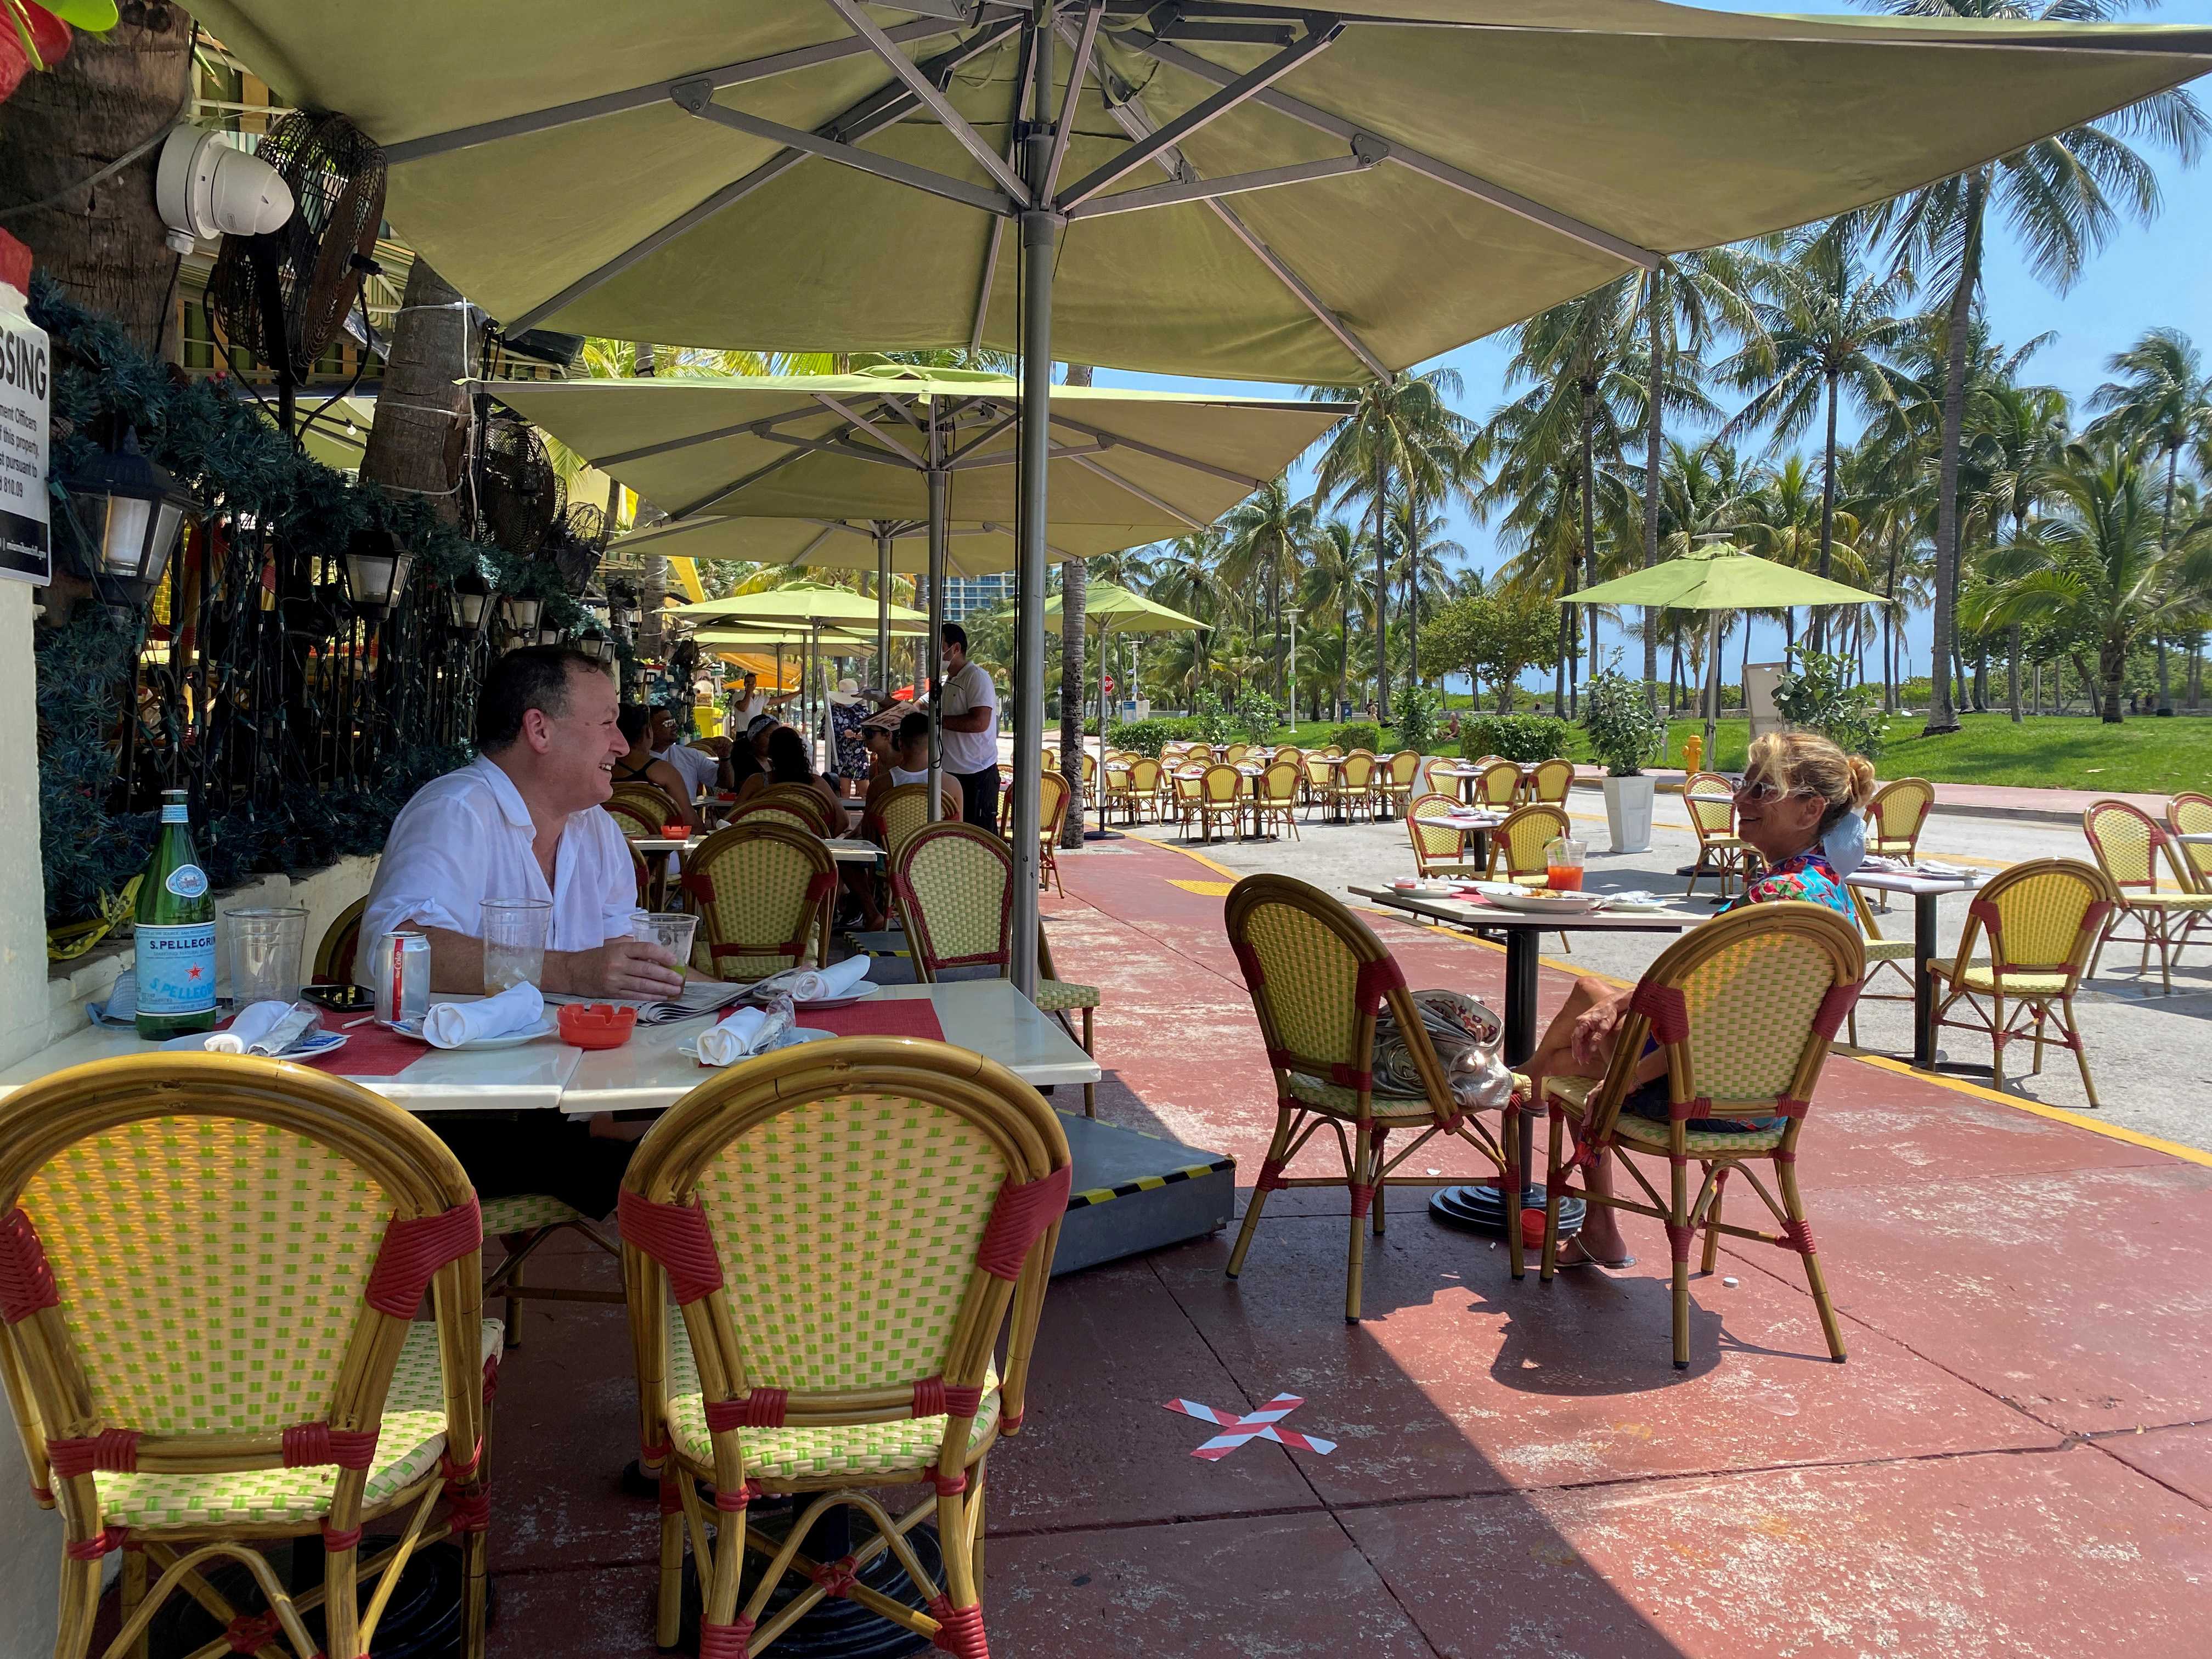 La demanda por alquilar o vender locales para la gastronomía en Miami es tan alta que las ofertas duran muy poco
REUTERS/Zachary Fagenson/File Photo